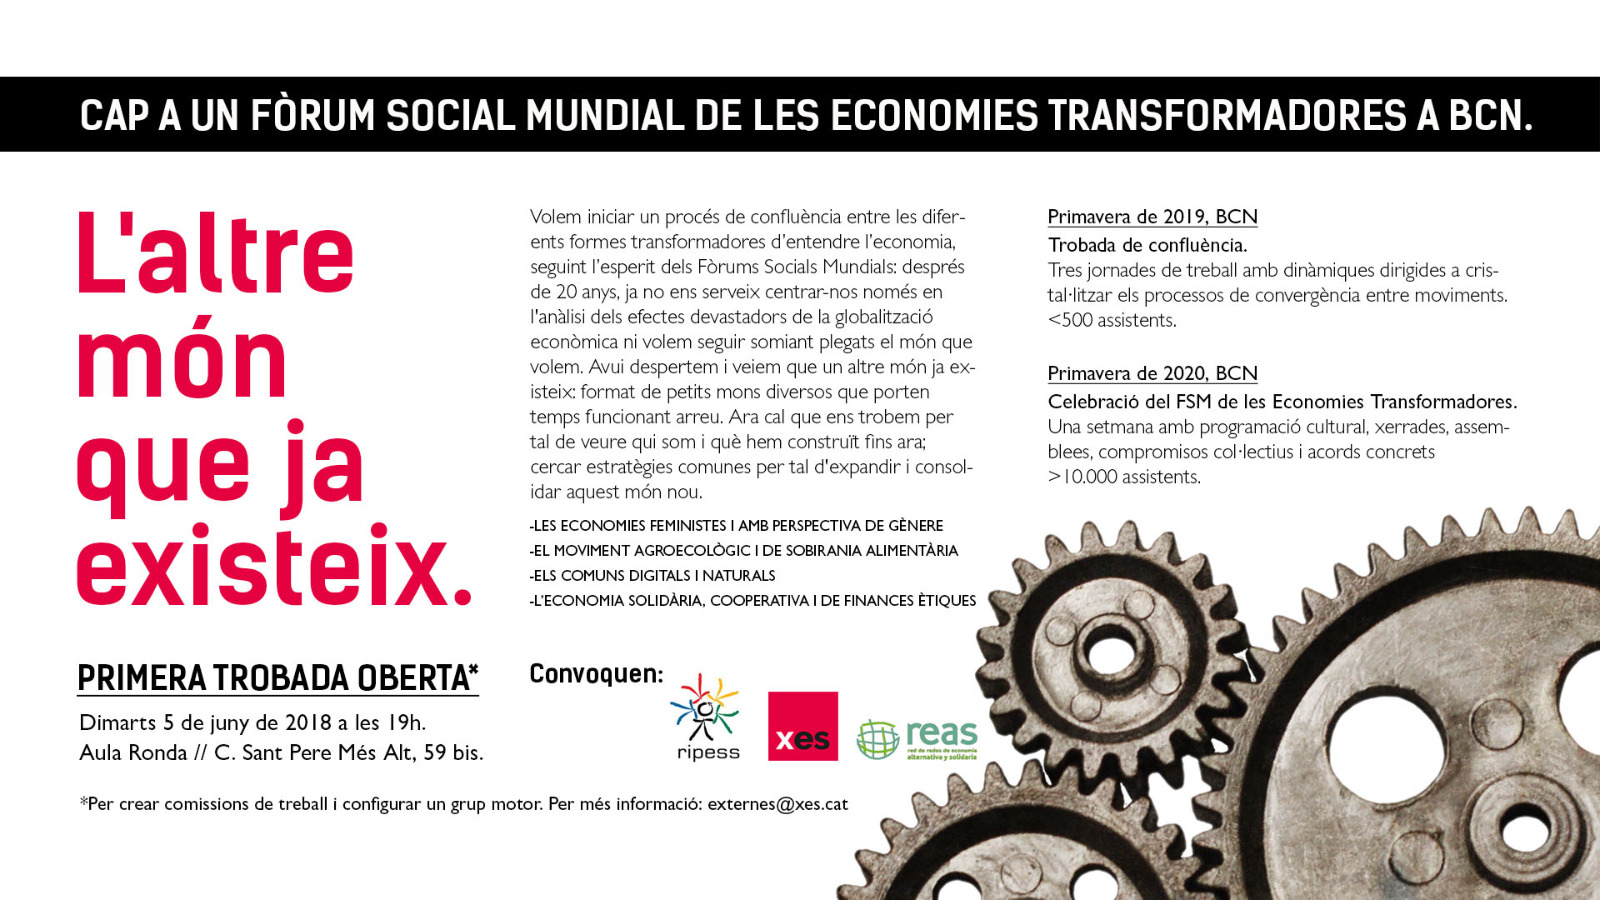 Cap a un Fòrum Social Mundial de les economies transformadores a Barcelona